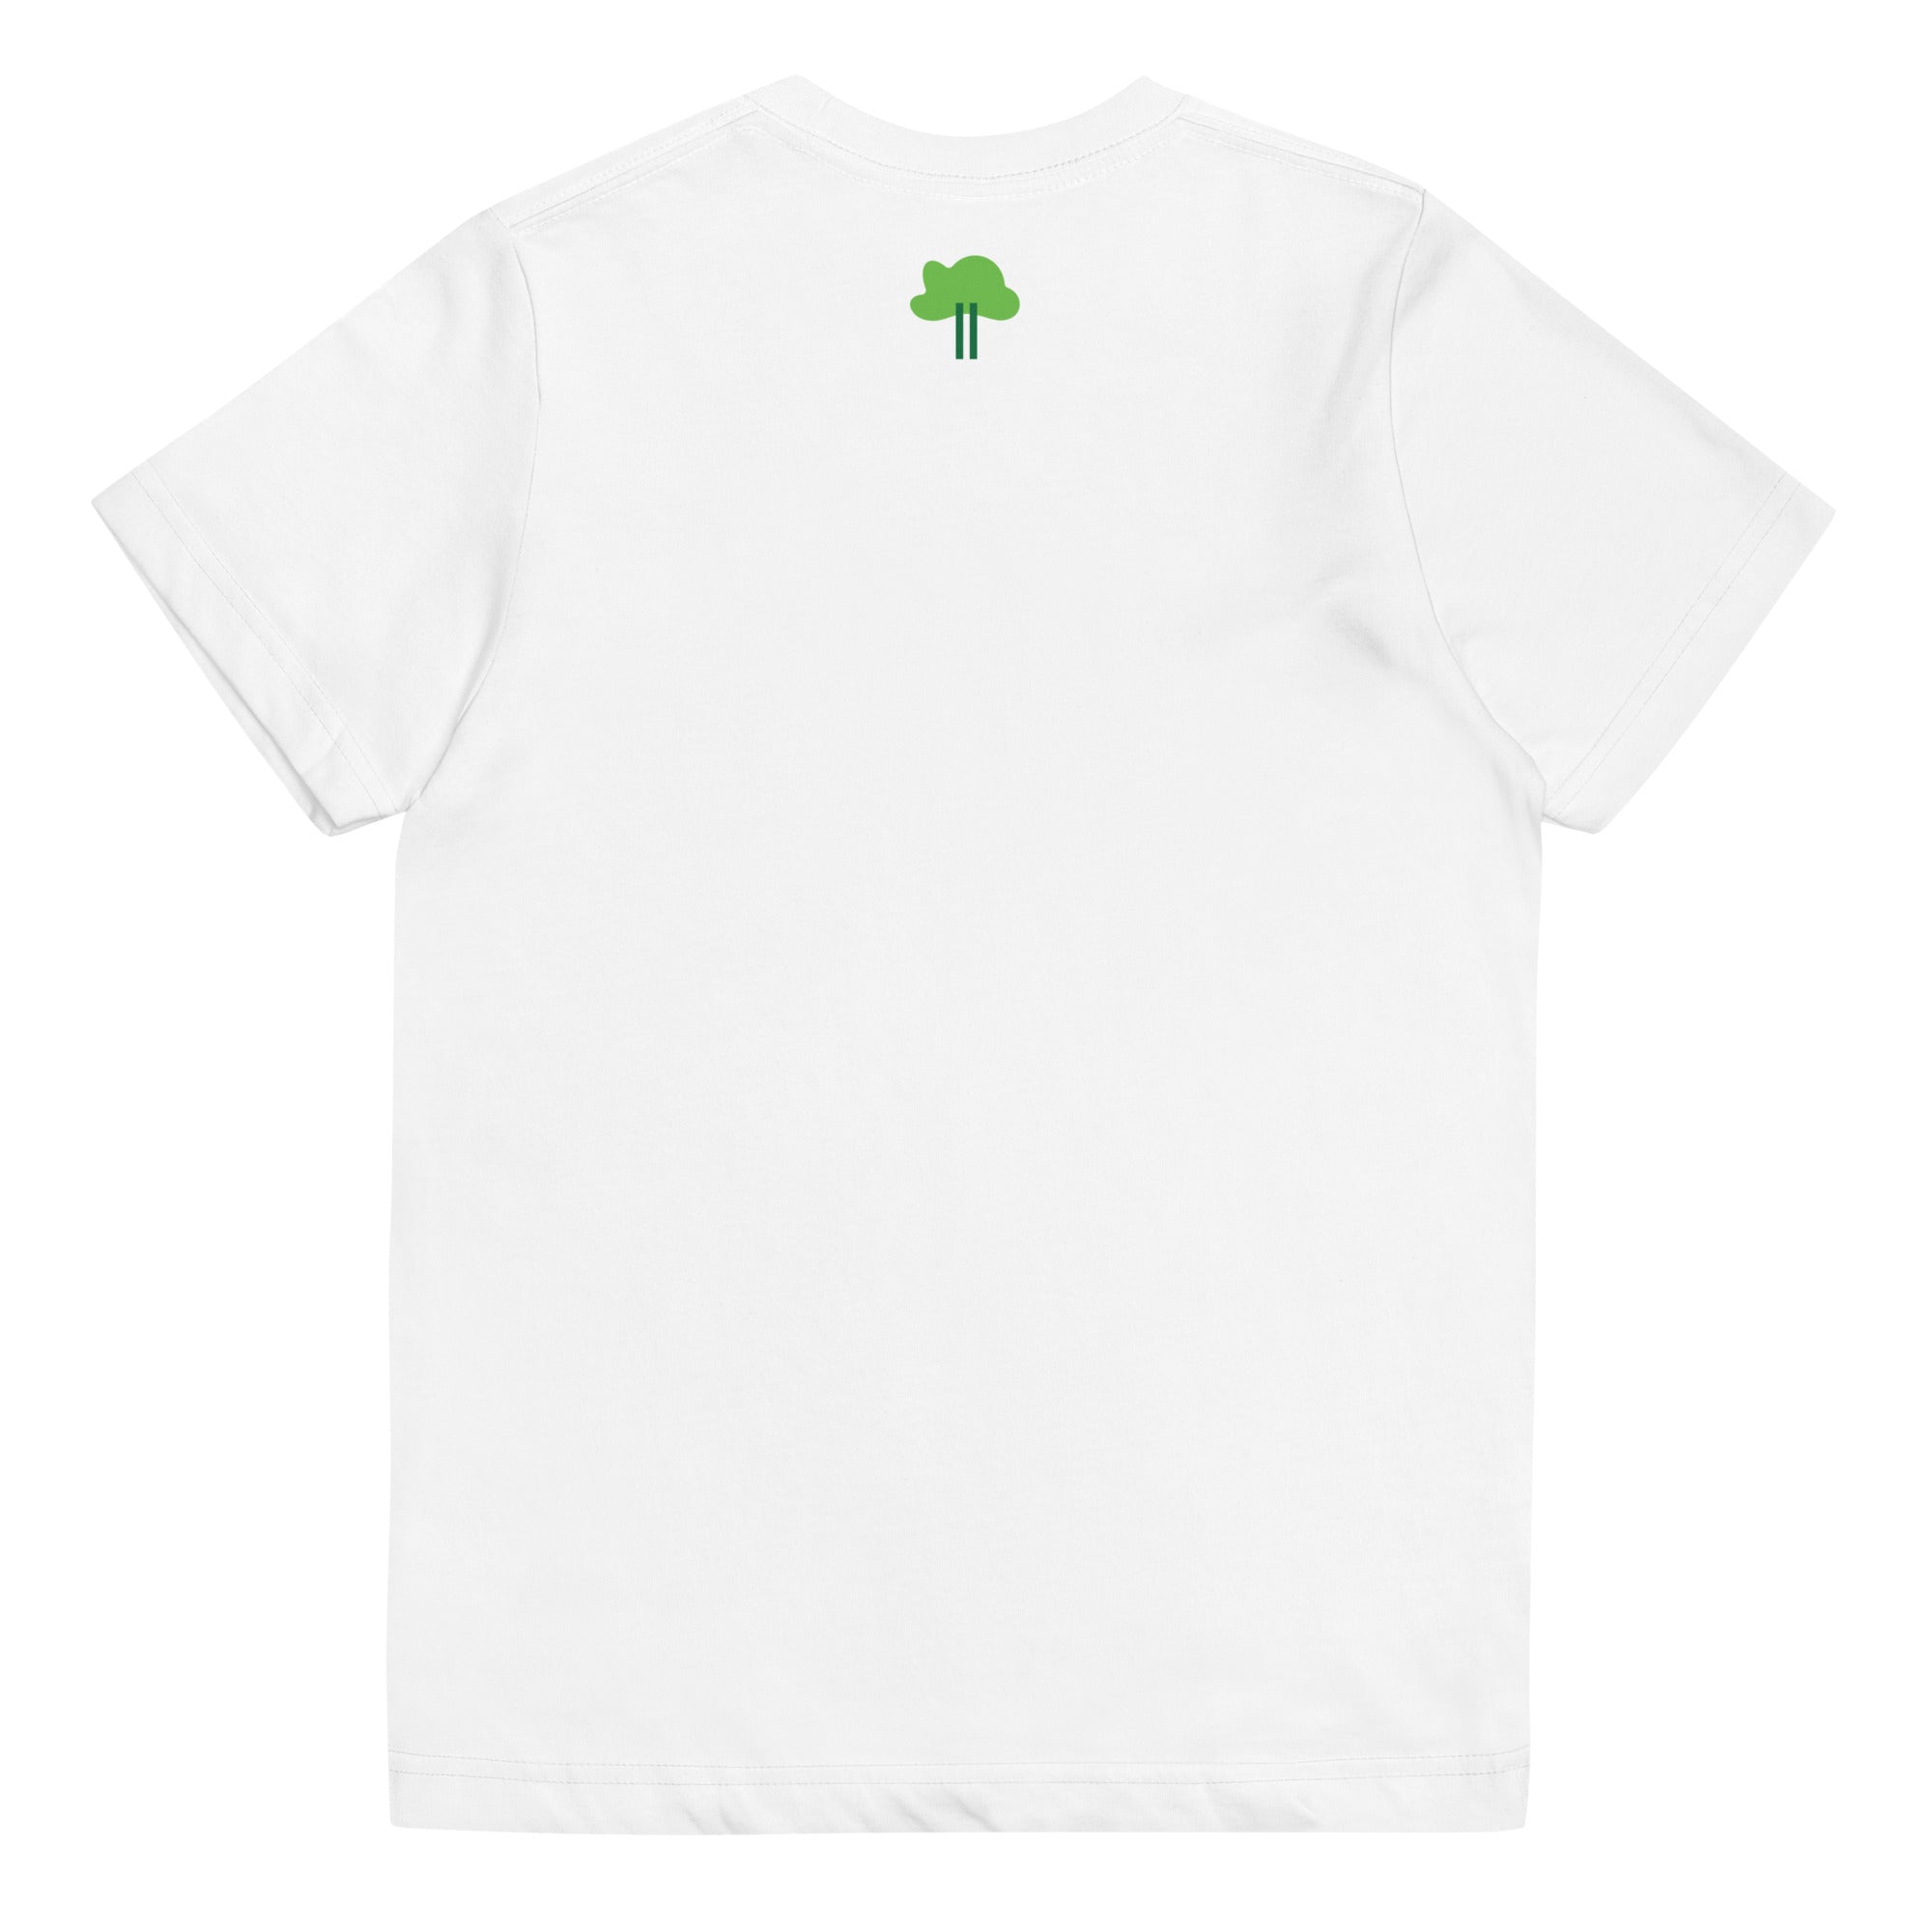 I Temp - Sabana - K6 | Youth jersey t-shirt